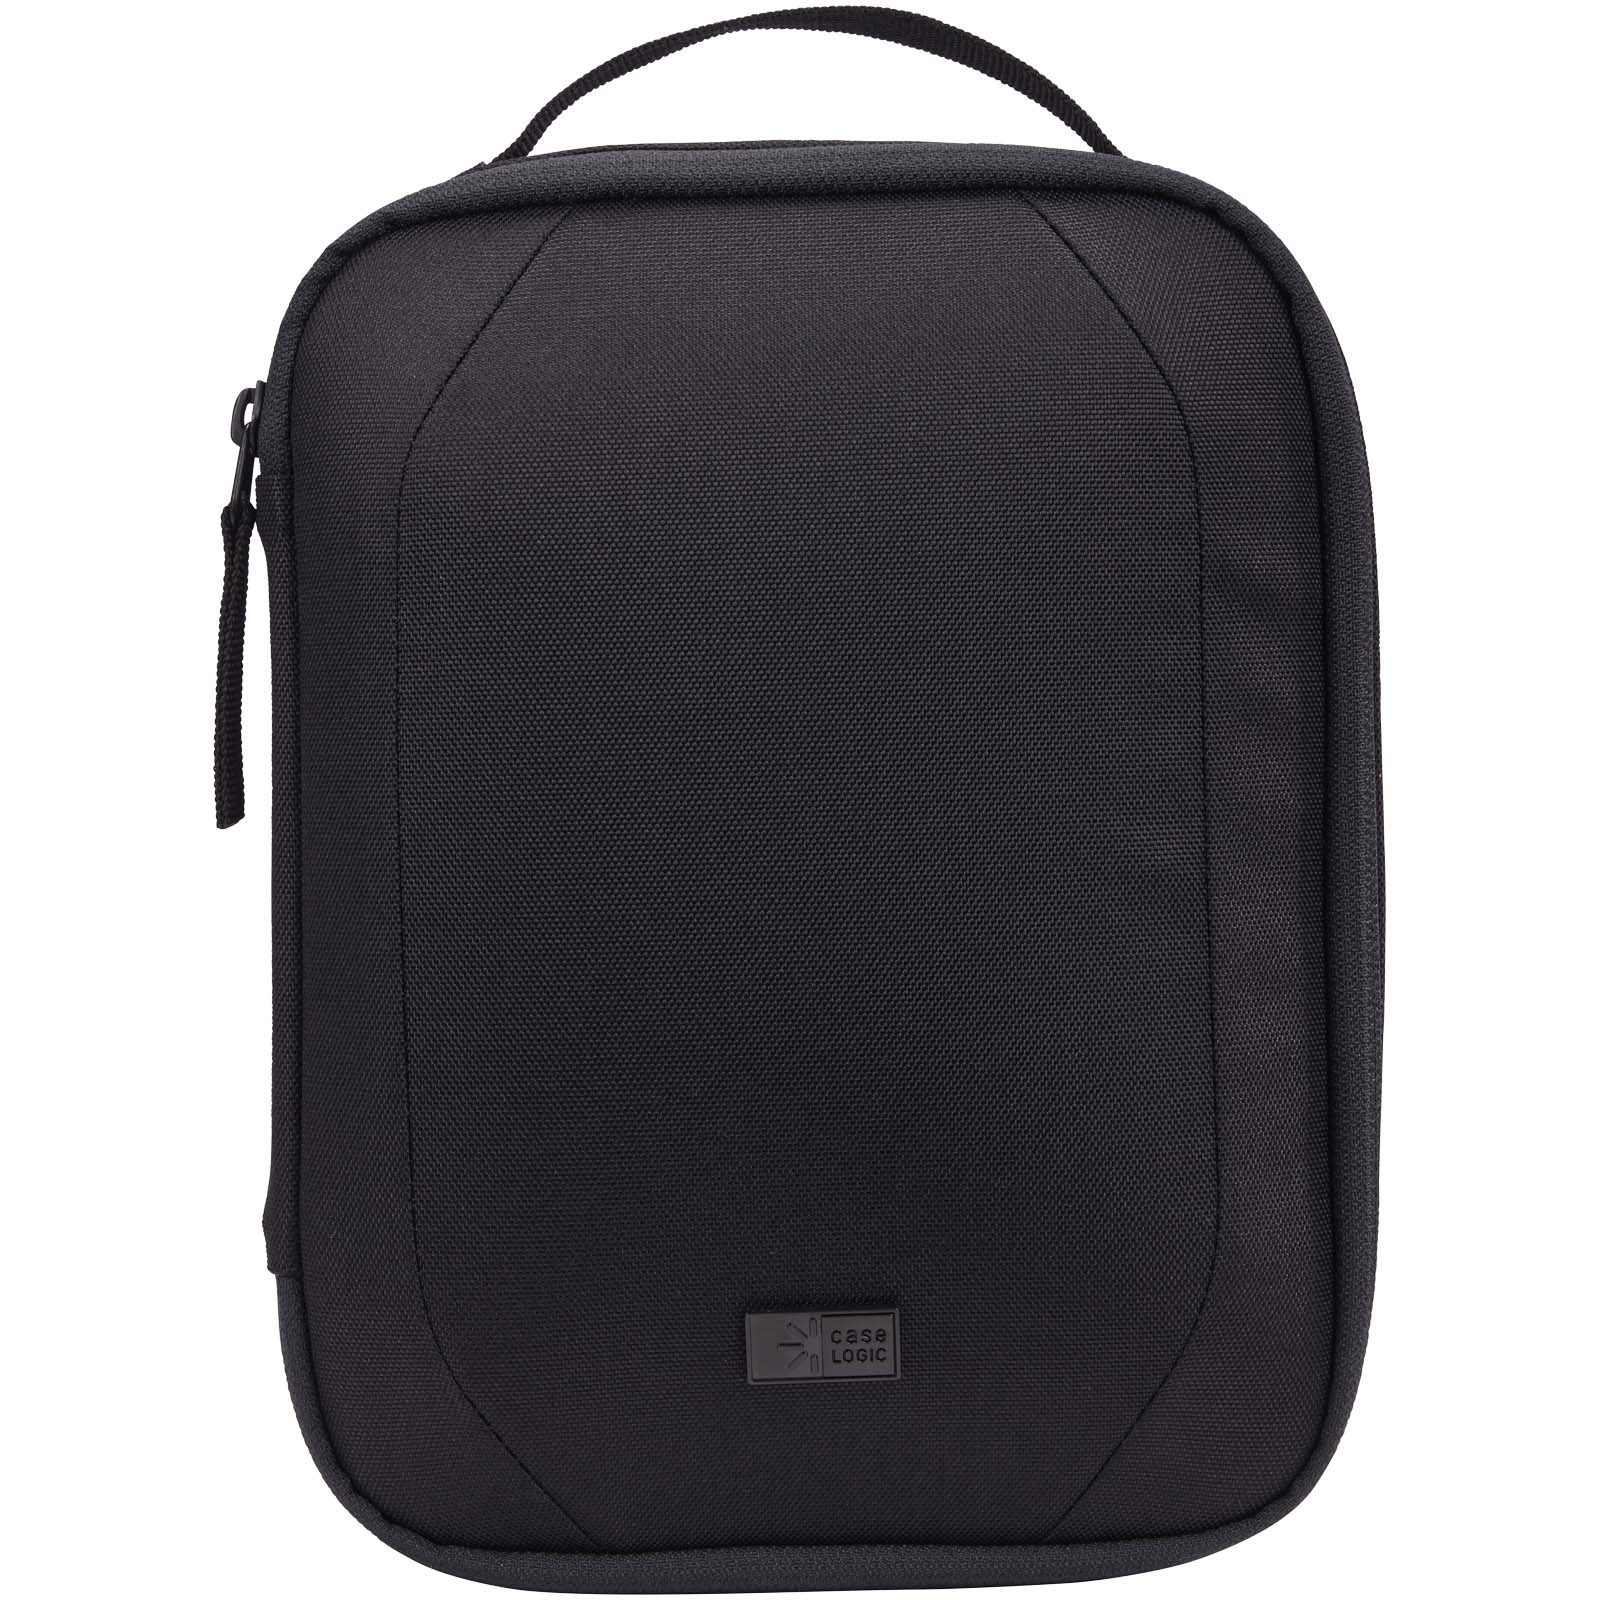 Advertising Travel Accessories - Case Logic Invigo accessories bag - 1